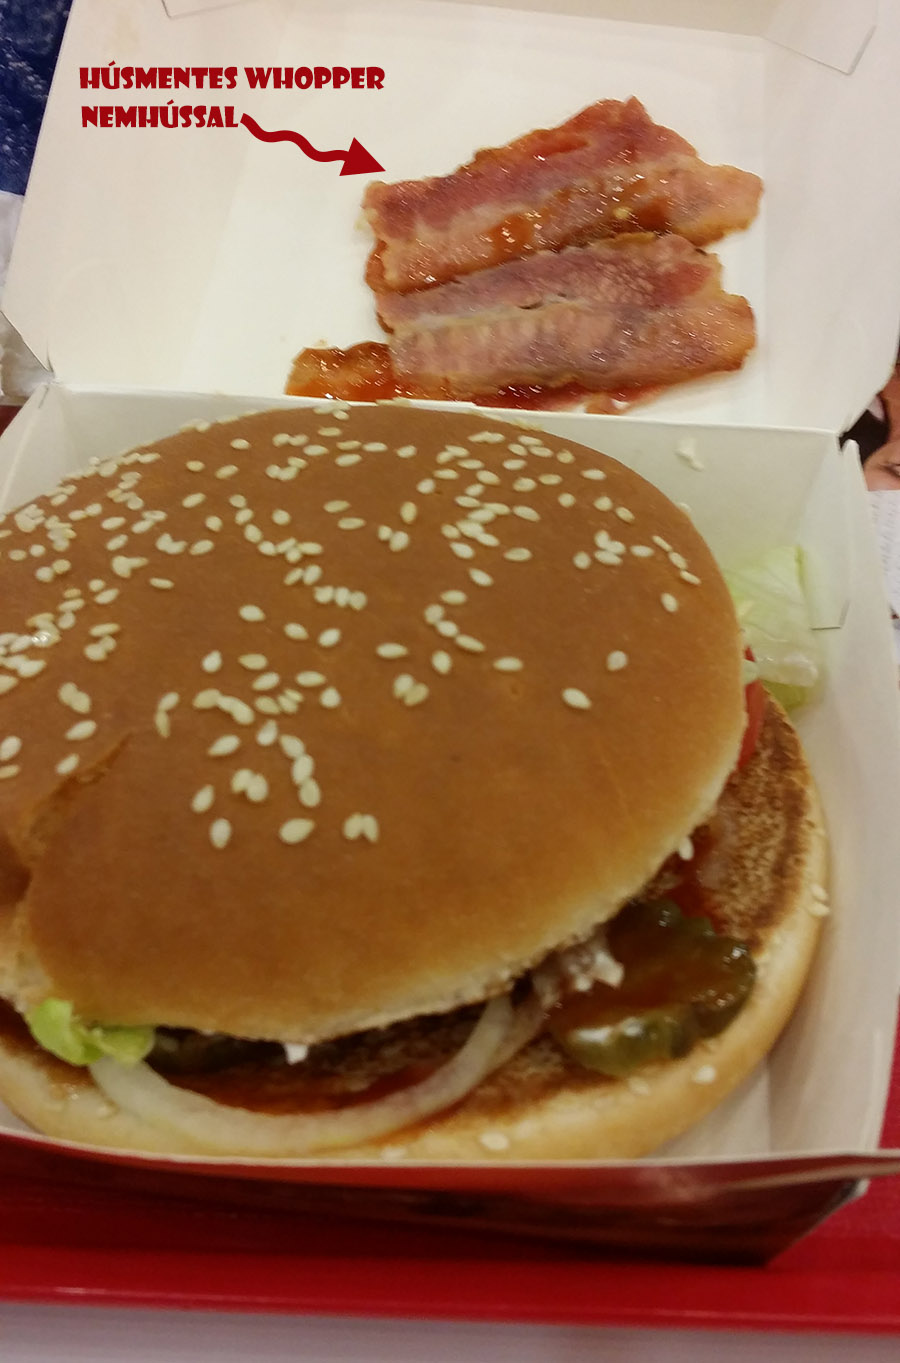 burger-king-whopper-hus-nelkul-mert-a-szalonna-az-biztos-noveny.jpg